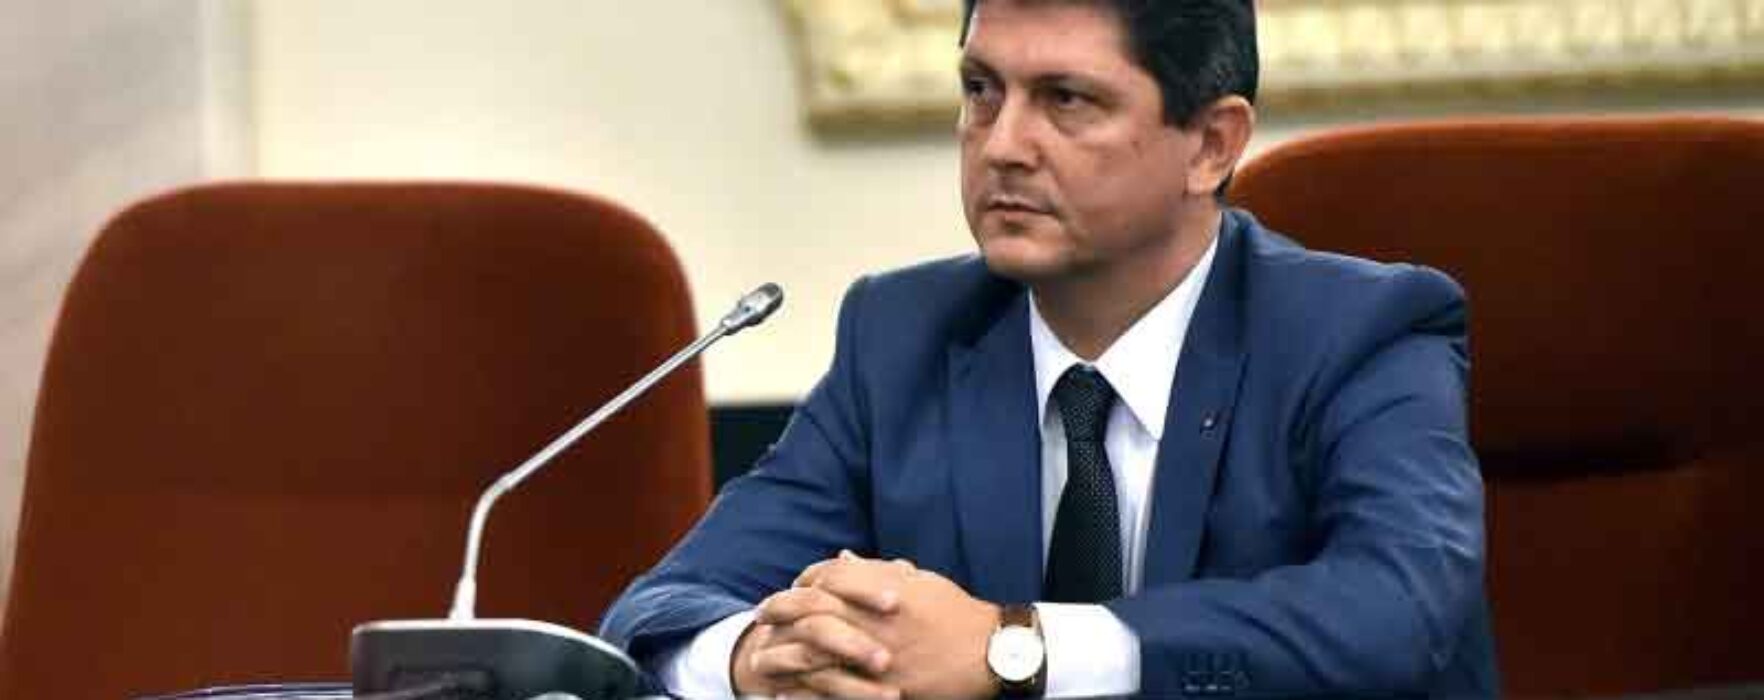 Senatorul PSD Titus Corlățean, nou apel la premierul Cîțu, pe tema efectelor exploziei de la Găeşti